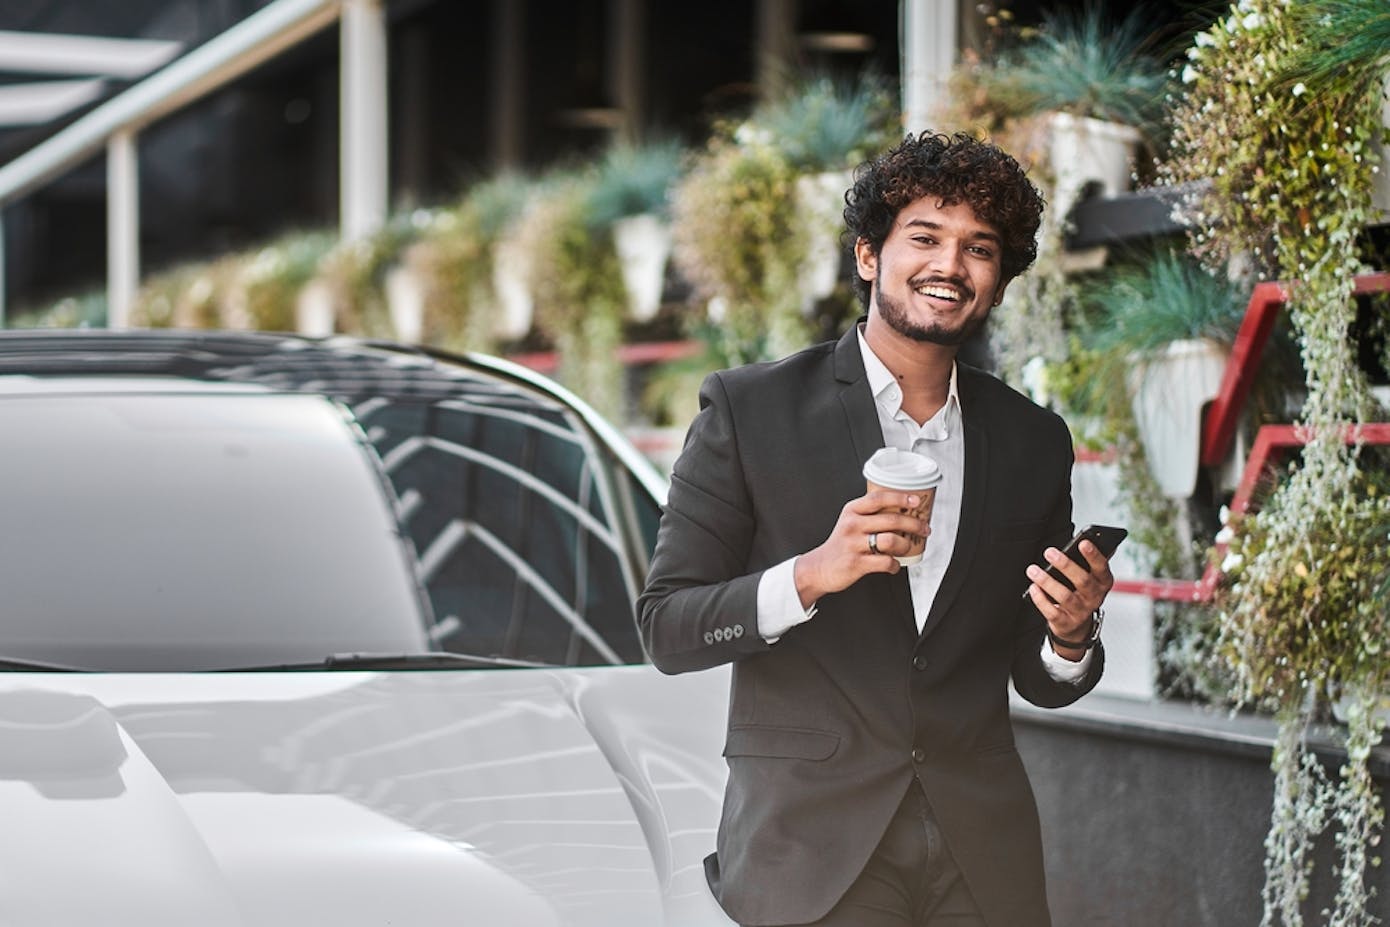 A businessman enjoying a to-go coffee valets his car digitally.